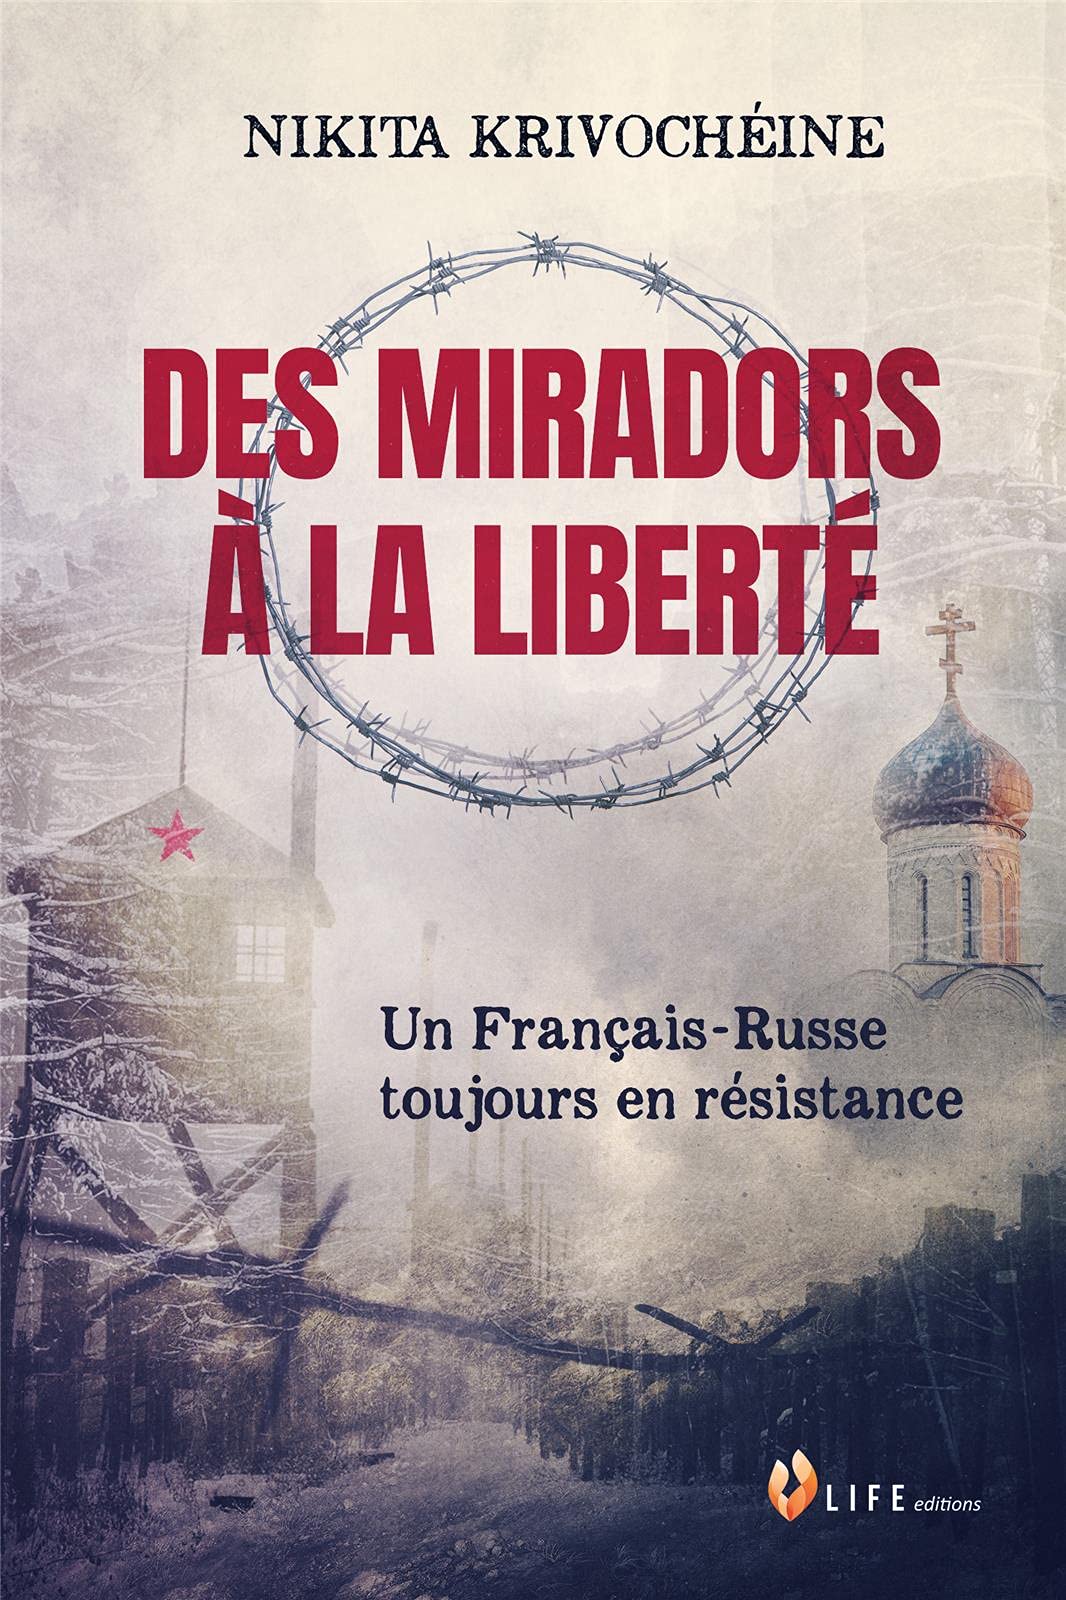 Couverture. LIFE éditions. Des miradors à la liberté - Un Français-Russe toujours en résistance, par Nikita Krivochéine. 2021-04-28